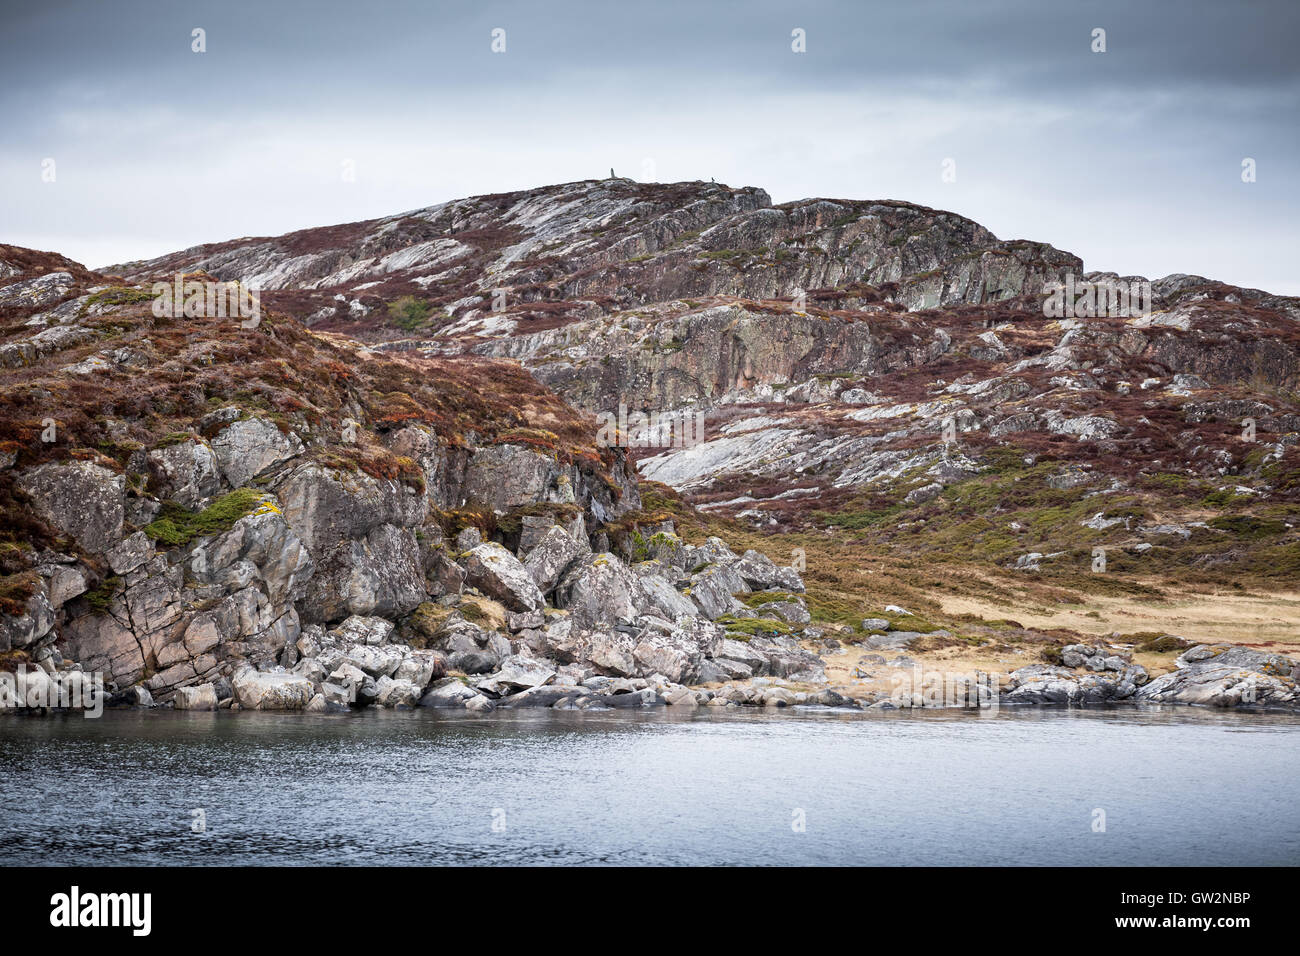 La côte de la mer de Norvège, en vertu de l'sloudy paysage côtier pittoresque sky Banque D'Images